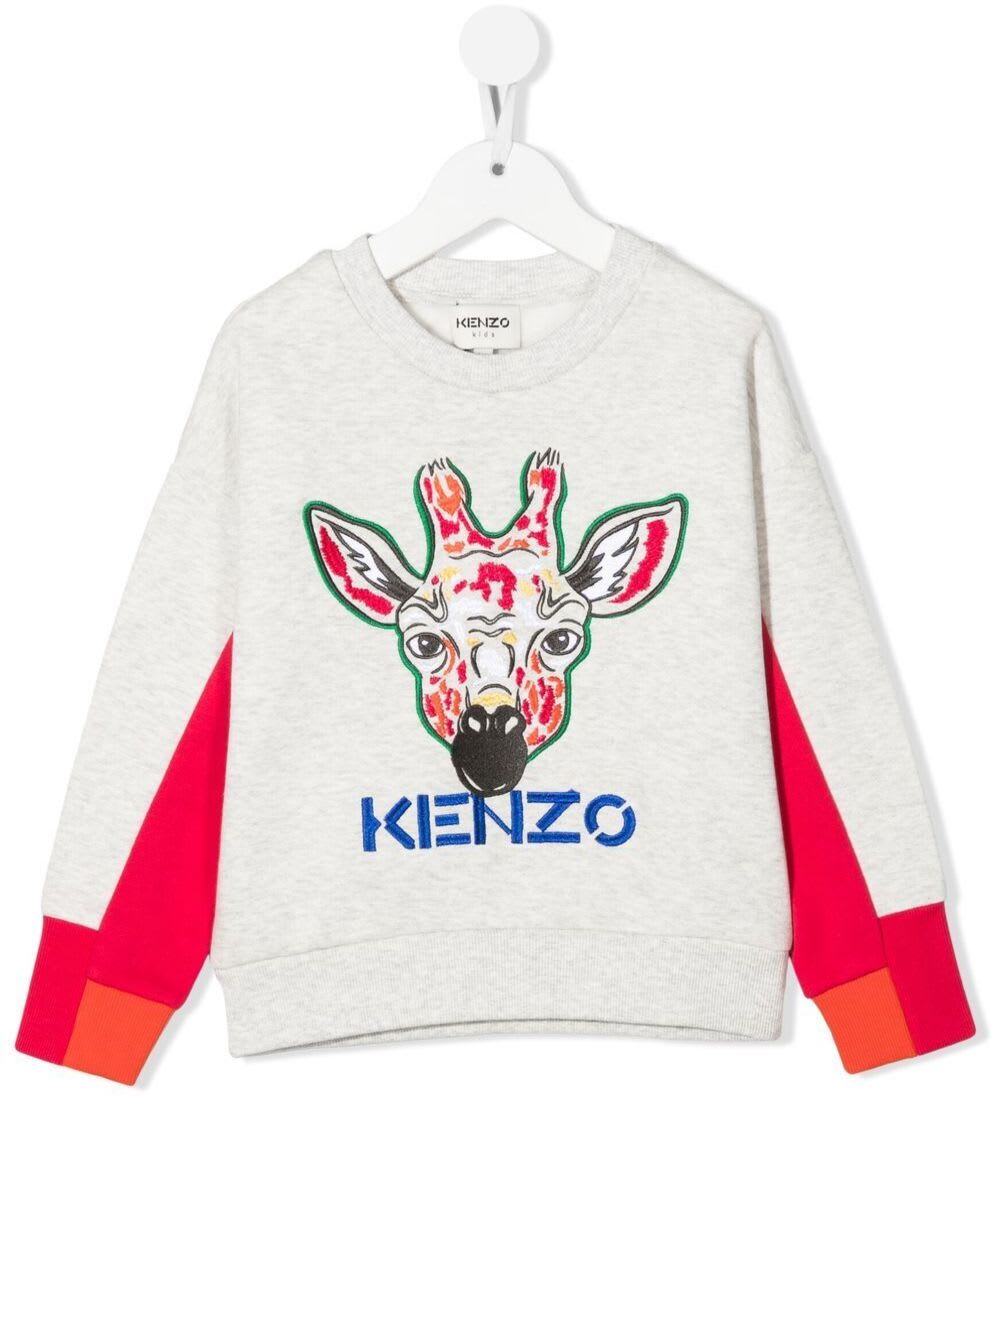 Kenzo Kids Embroidered Grey Blend Cotton Sweatshirt Boy